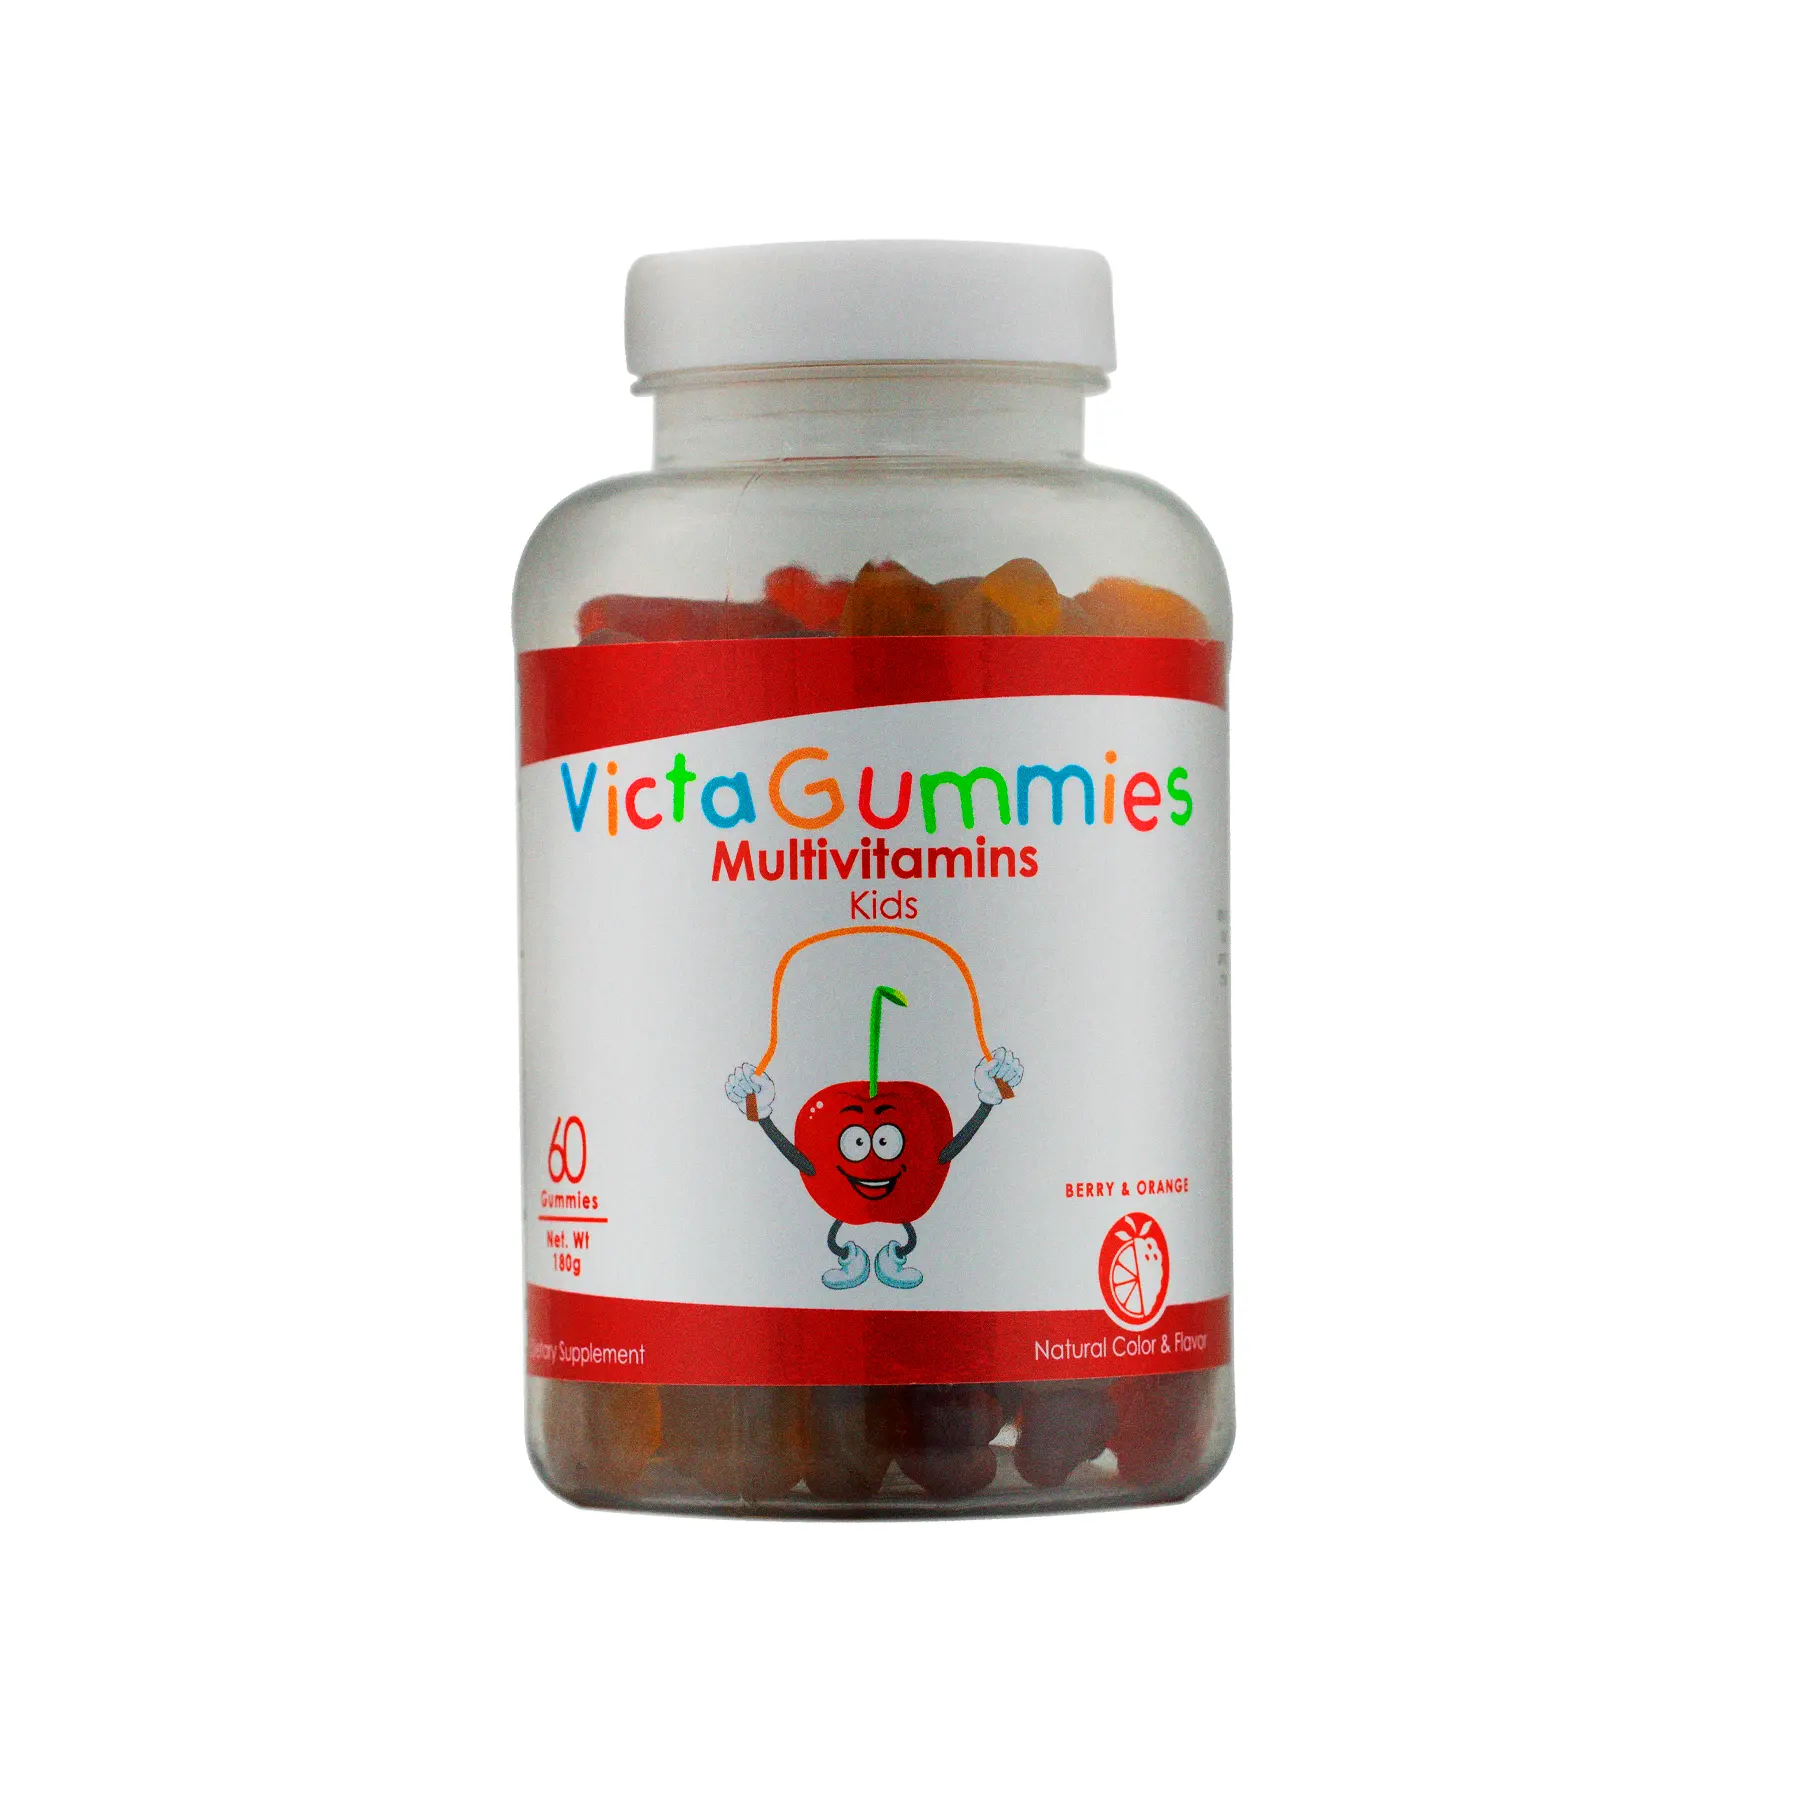 Victagummies Multivitaminen 60 Gummies Per Fles-Voedingssupplement Voor Kinderen Met Een Mix Van Vitaminen A, C, D, E En Vitamine B